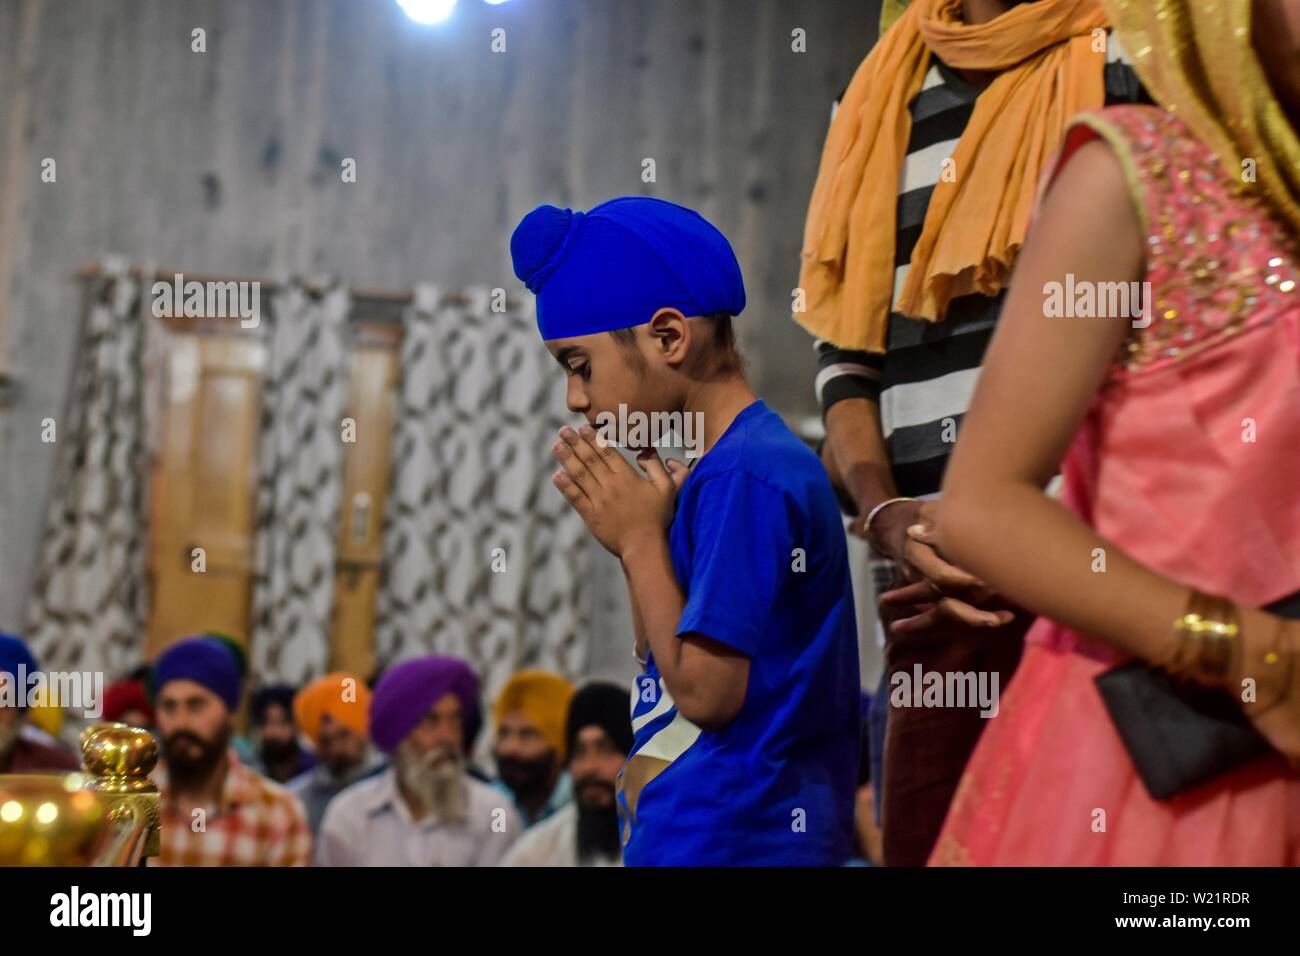 Un dévot prie dans un temple Sikh lors d'un anniversaire de naissance de la sixième gourou, Hargobind Singh à Srinagar.Les Sikhs dans tout le pays célèbrent l'anniversaire de la naissance de leur sixième gourou, Hargobind Singh, vendredi. La célébration a eu lieu en grande pompe et montrer à un temple Sikh principal ici à Srinagar. Banque D'Images